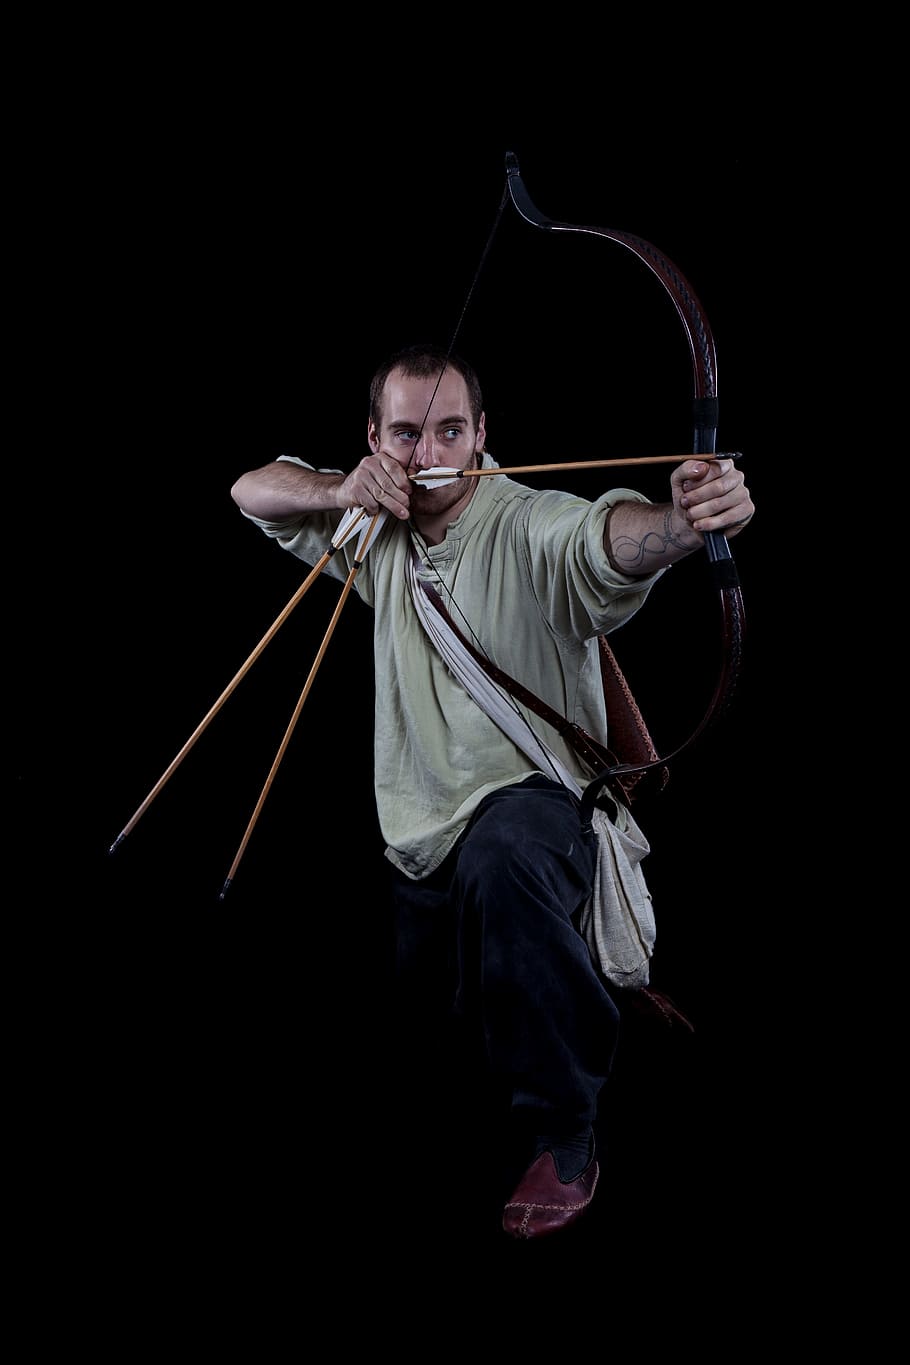 manusia, fokus, target, menggunakan, komposit, busur, viking, pemanah, abad pertengahan, historis